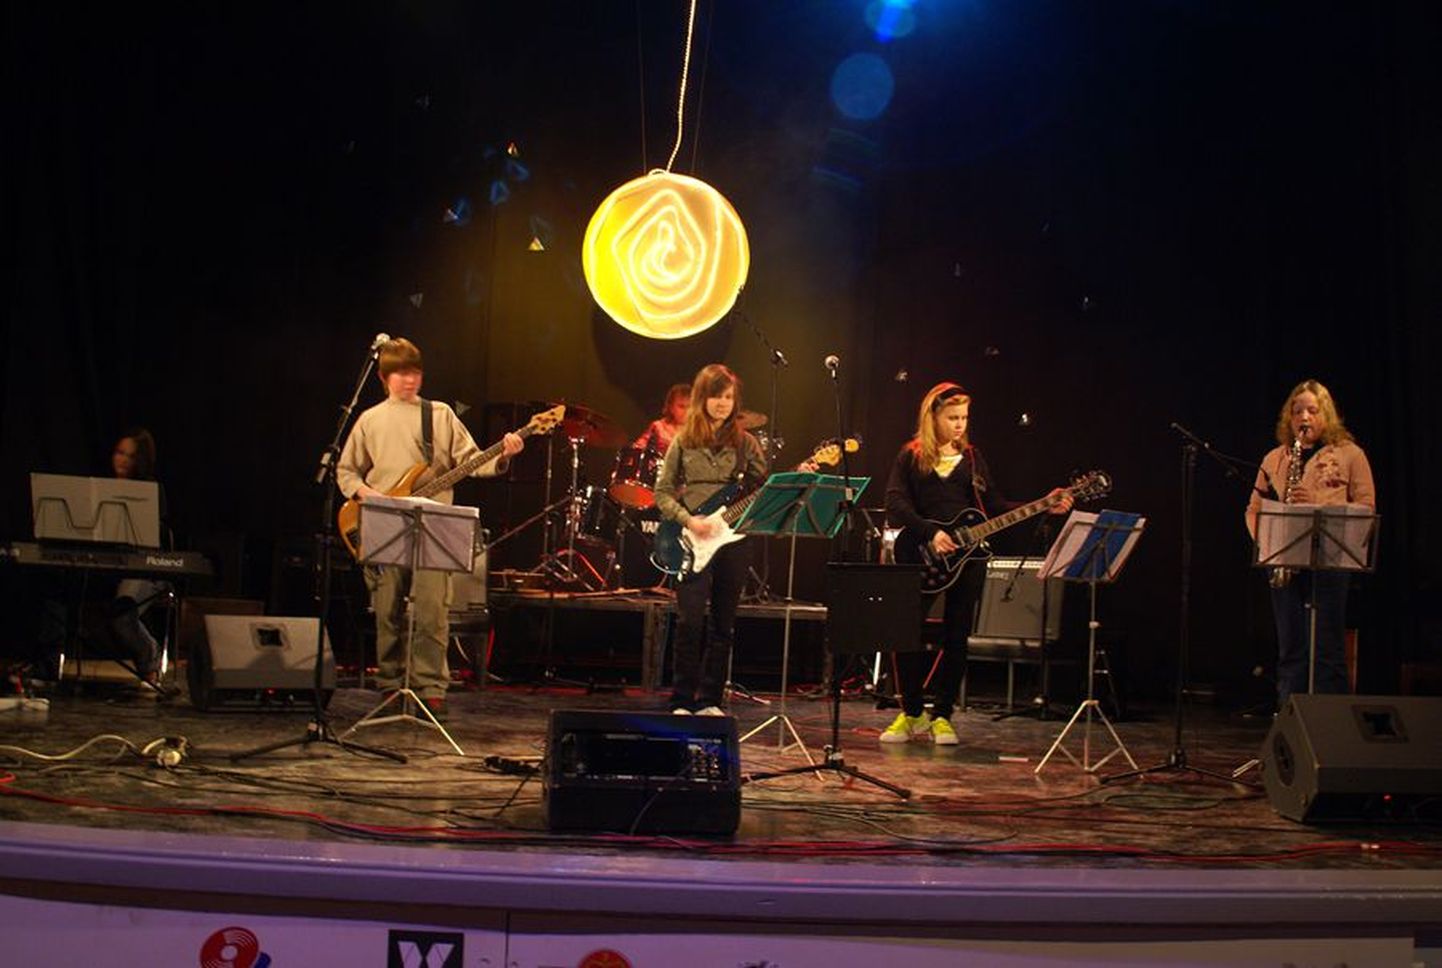 Bändide päeval on rahvast rõõmustamas käinud ka õige noored muusikud. 2007. aastal painutas lavalaudu ansambel Swingers.